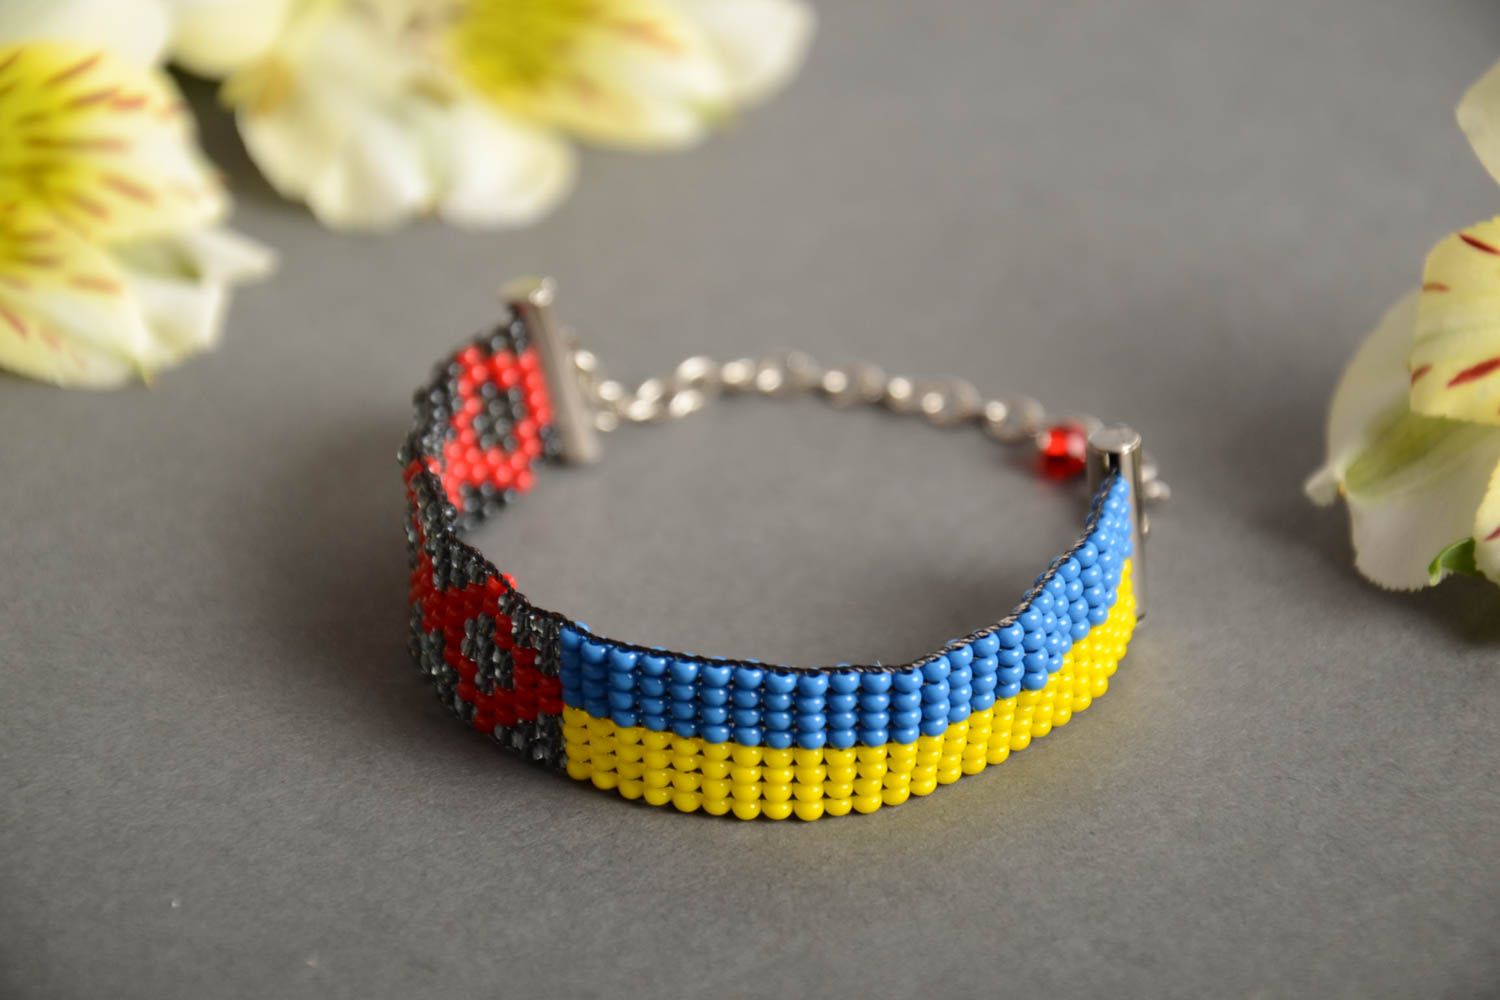 Easy Flat Spiral Stitch Beaded Bracelet Tutorial - Beginner - YouTube